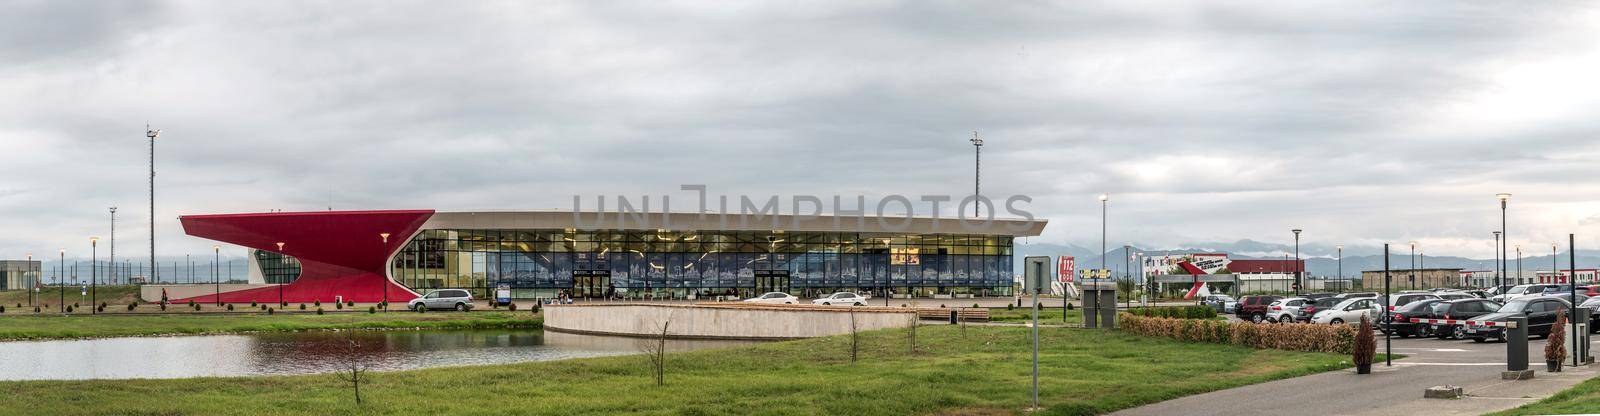 Building of Kutaisi airport, Georgia by tan4ikk1